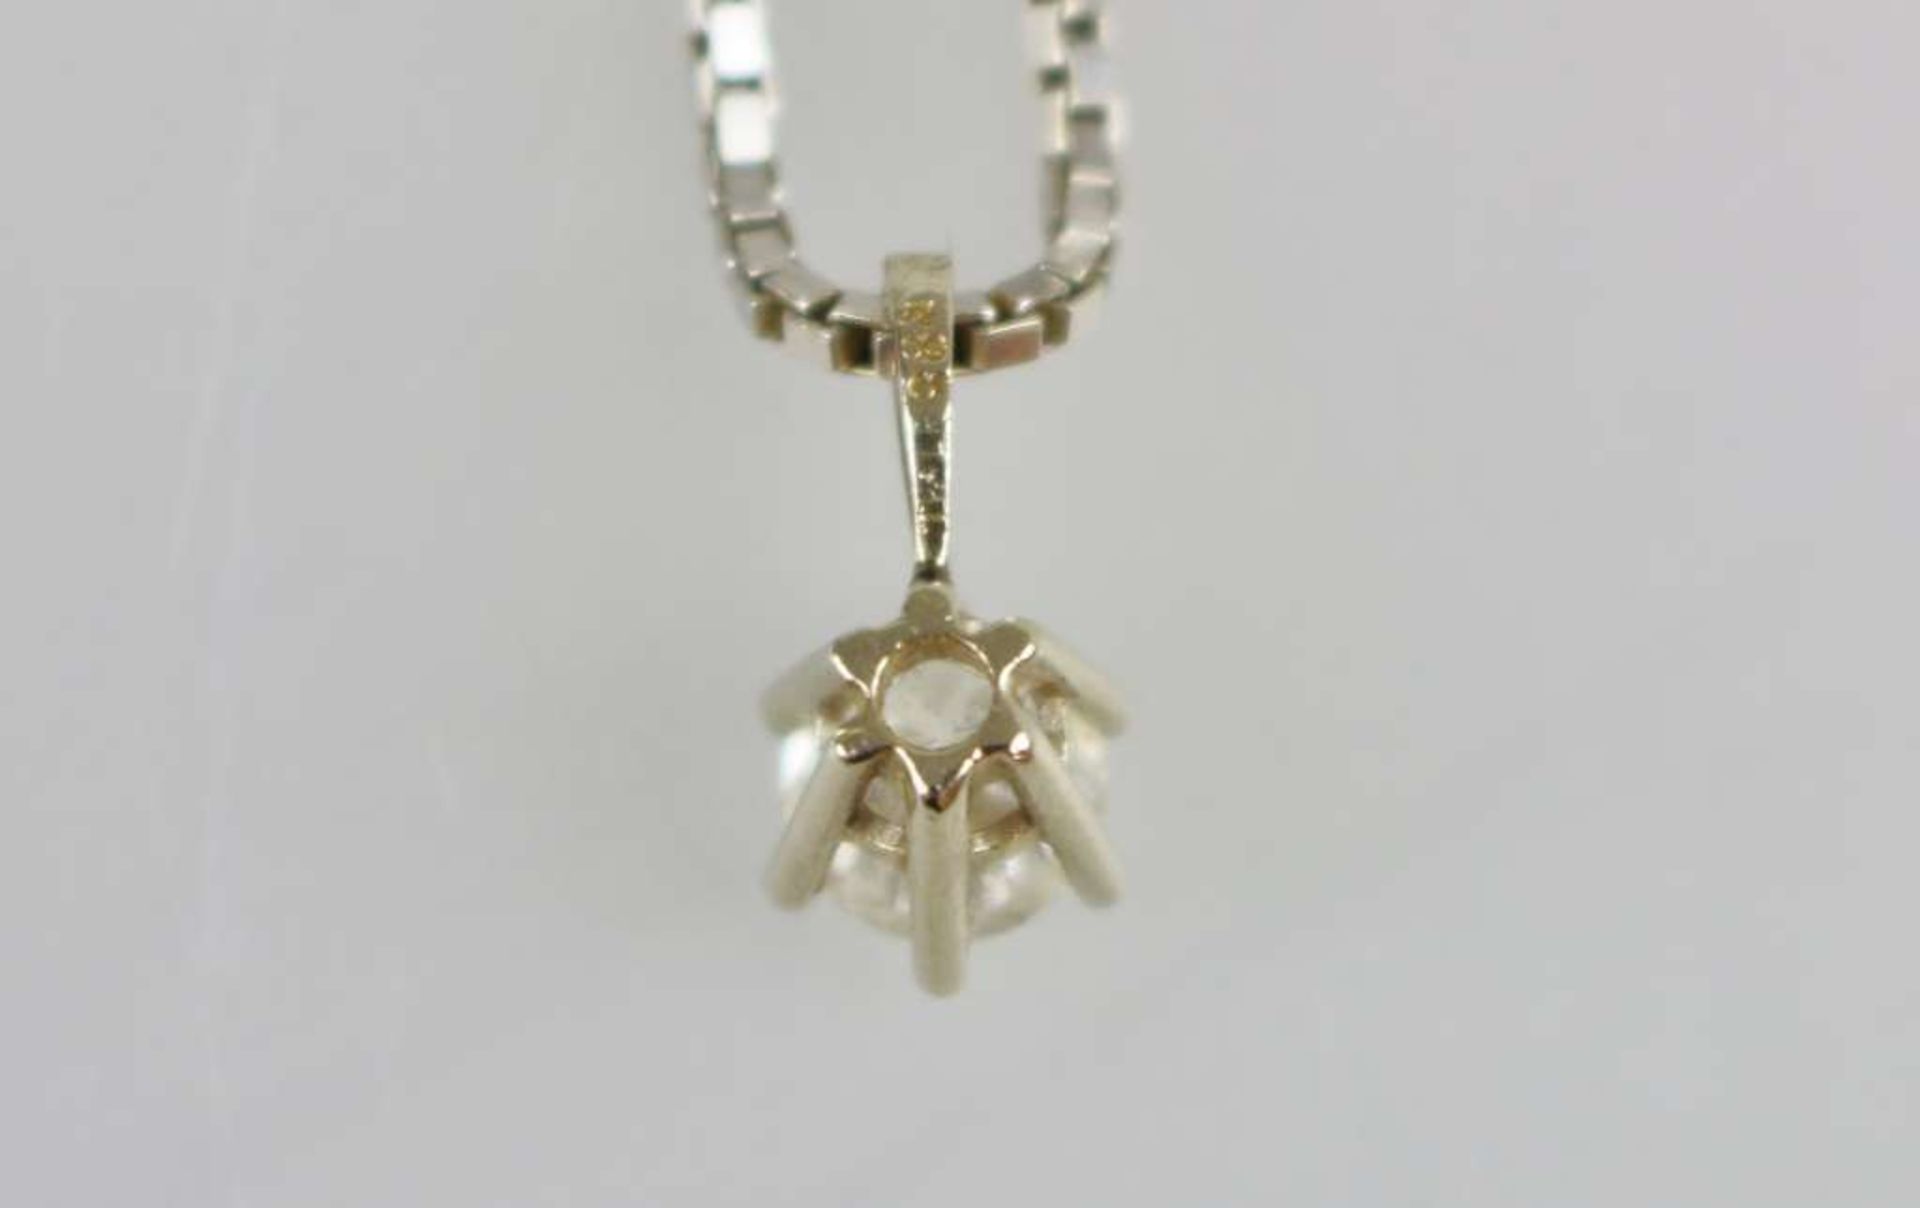 Halskette mit Solitär-Diamant, filigrane Kette in 750er WG, daran kronenförmige Fassung in 585er WG, - Bild 3 aus 3